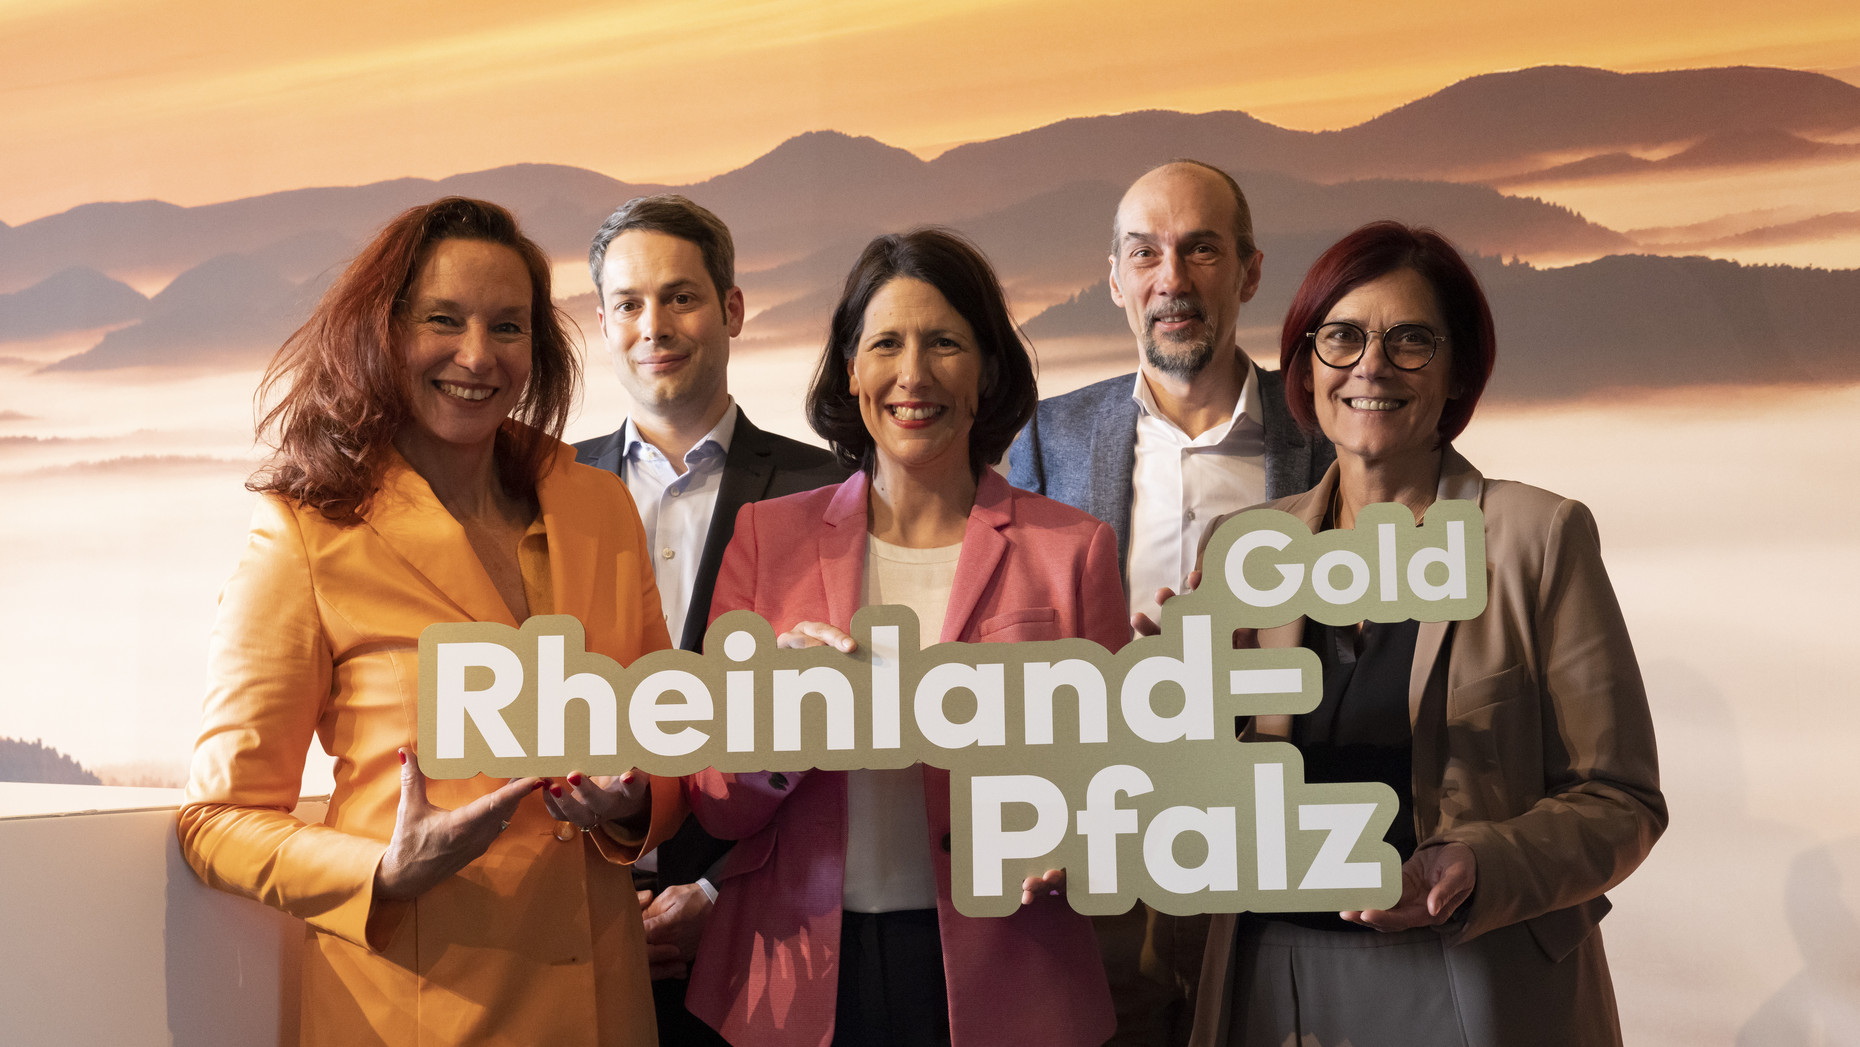 Wirtschaftsministerin Daniela Schmitt stellt zusammen mit Staatssekretärin Petra Dick-Walther und der Agentur Scholz & Friends die neue Kampagne für den Wirtschaftsstandort Rheinland-Pfalz vor.